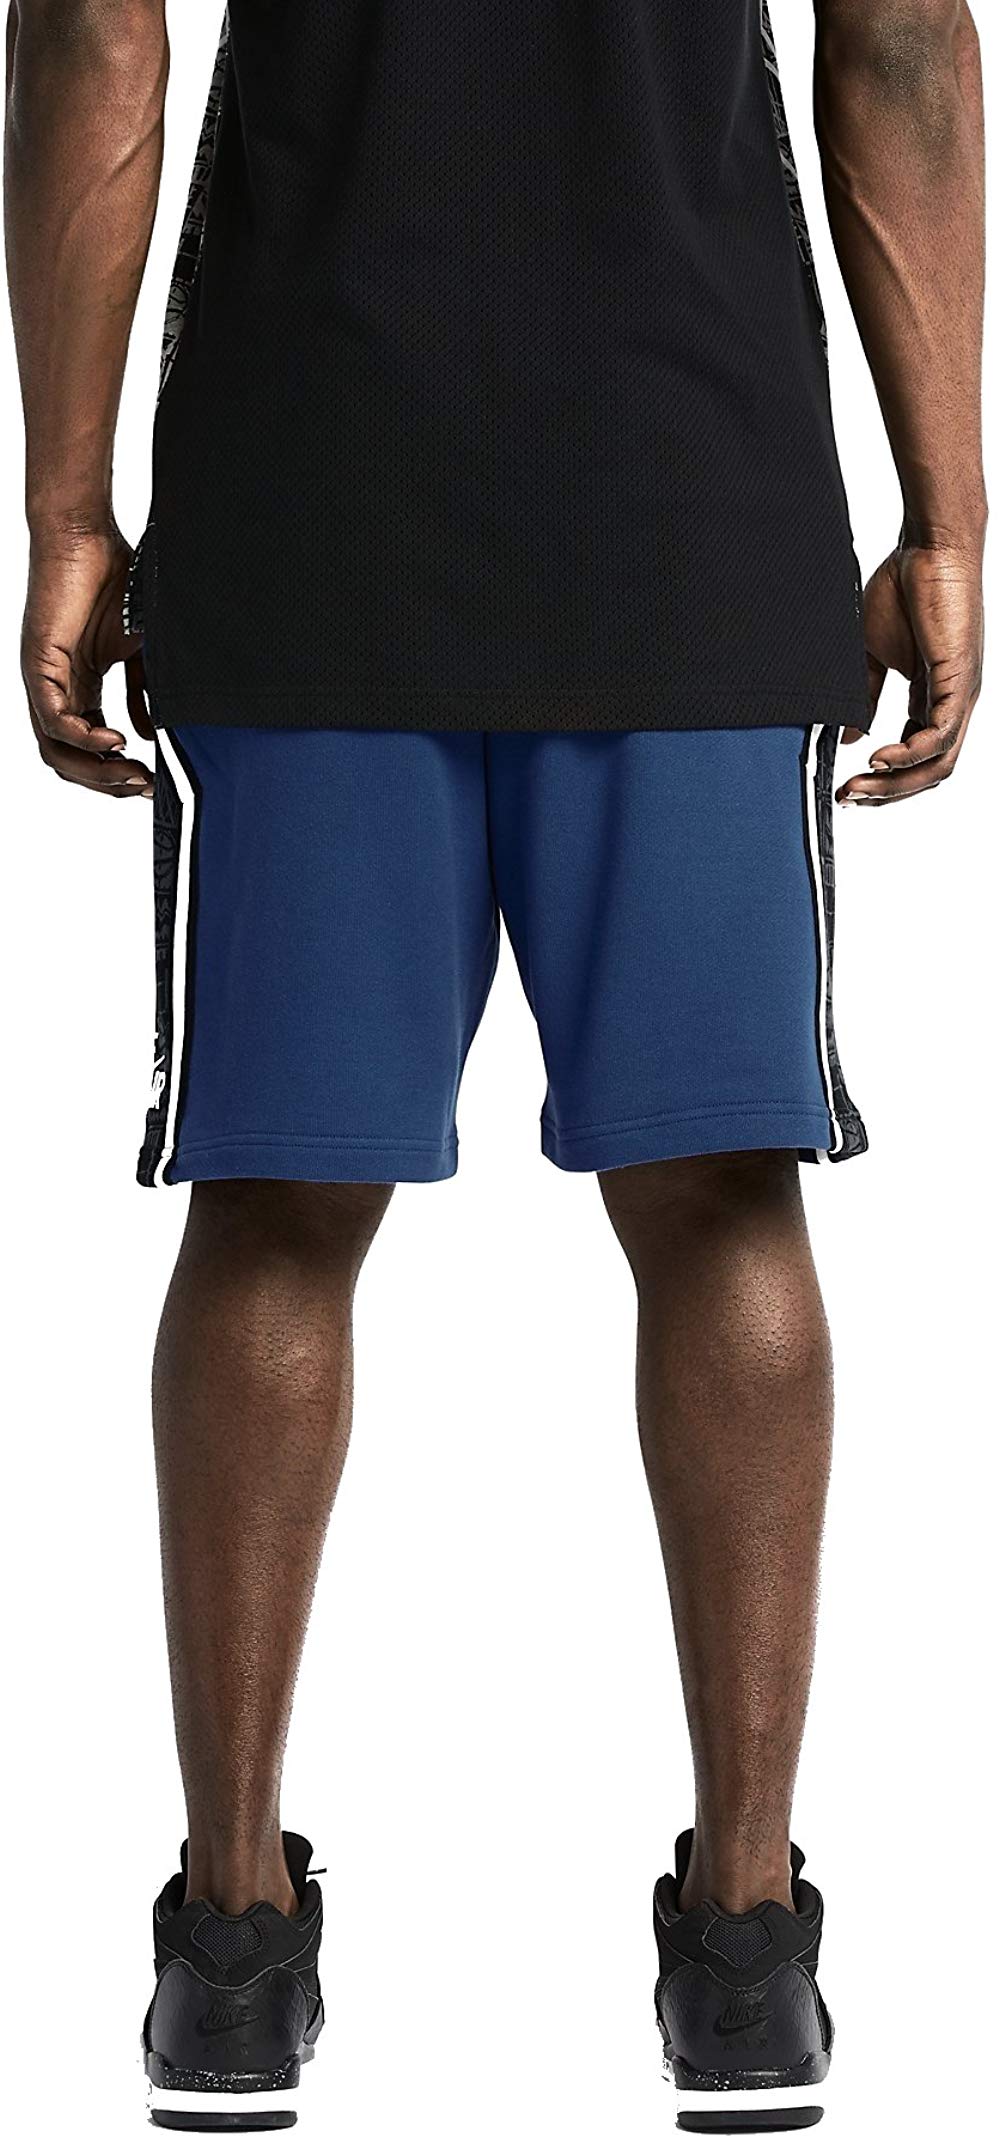 Nike Mens Retro Sweat Heavy Shorts